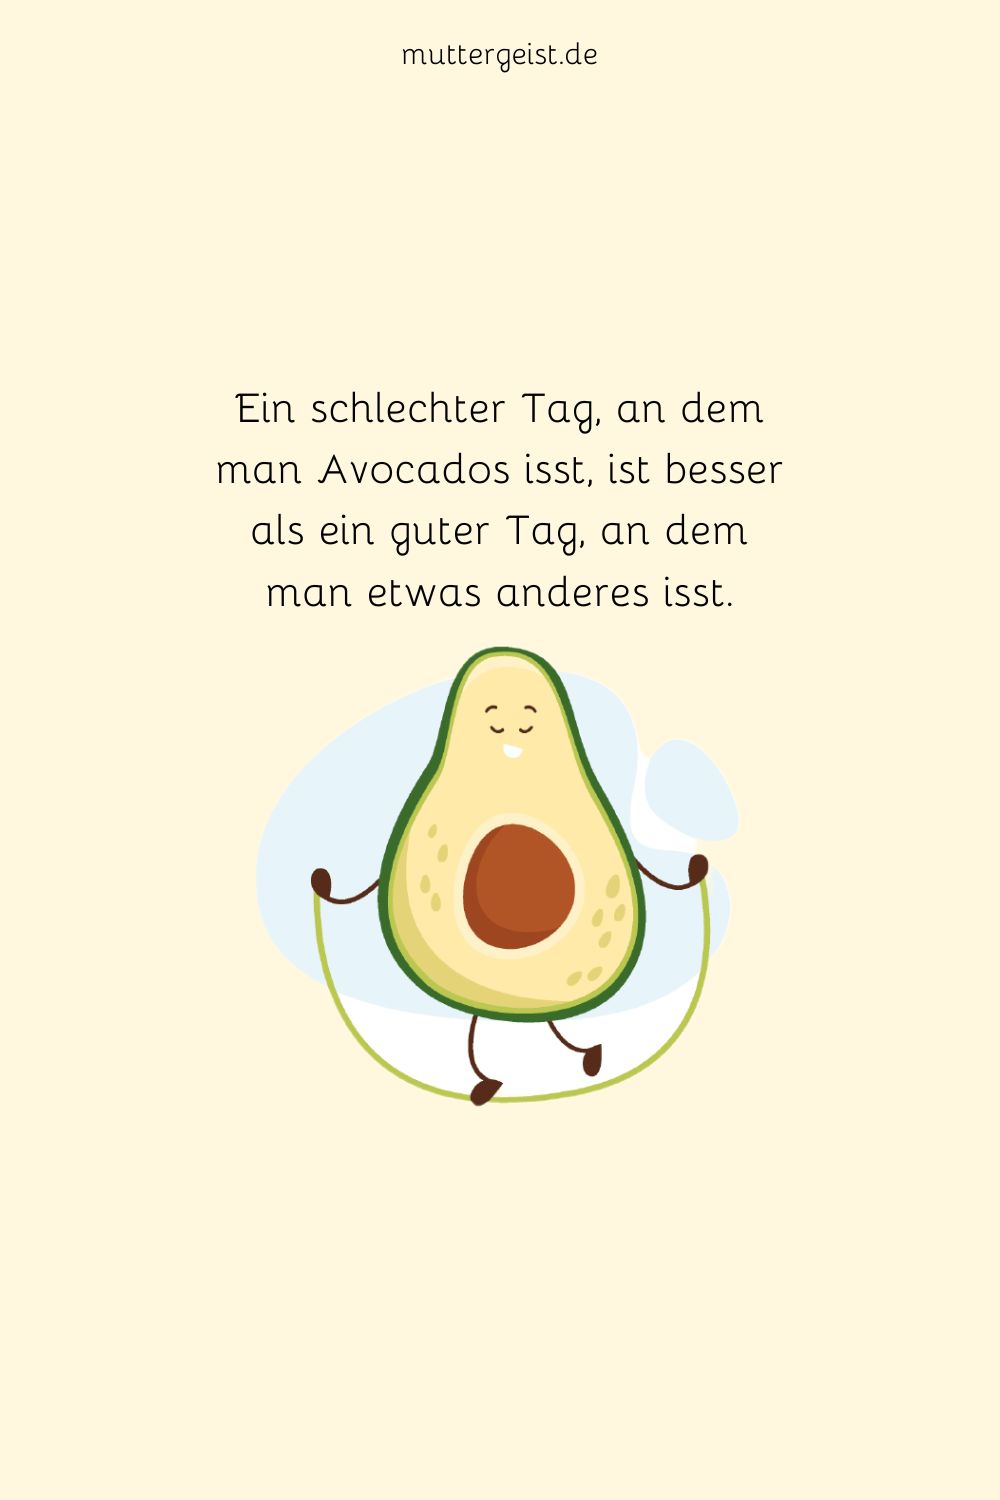 Ein schlechter Tag, an dem man Avocados isst, ist besser als ein guter Tag, an dem man etwas anderes isst